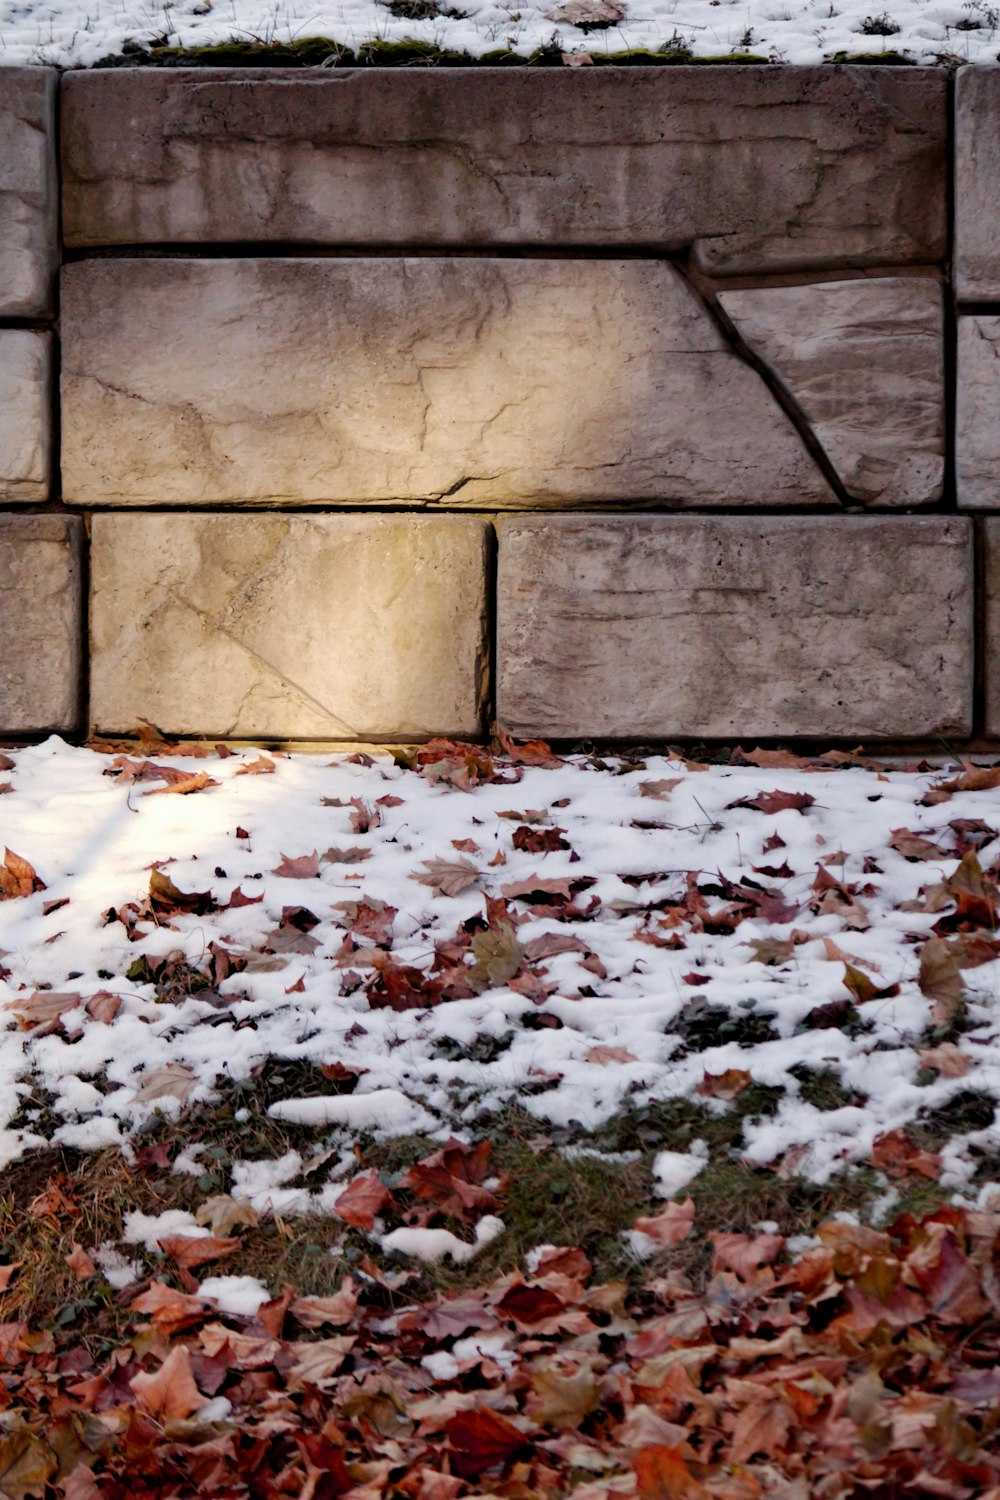 un idrante davanti a un muro di mattoni coperto di neve